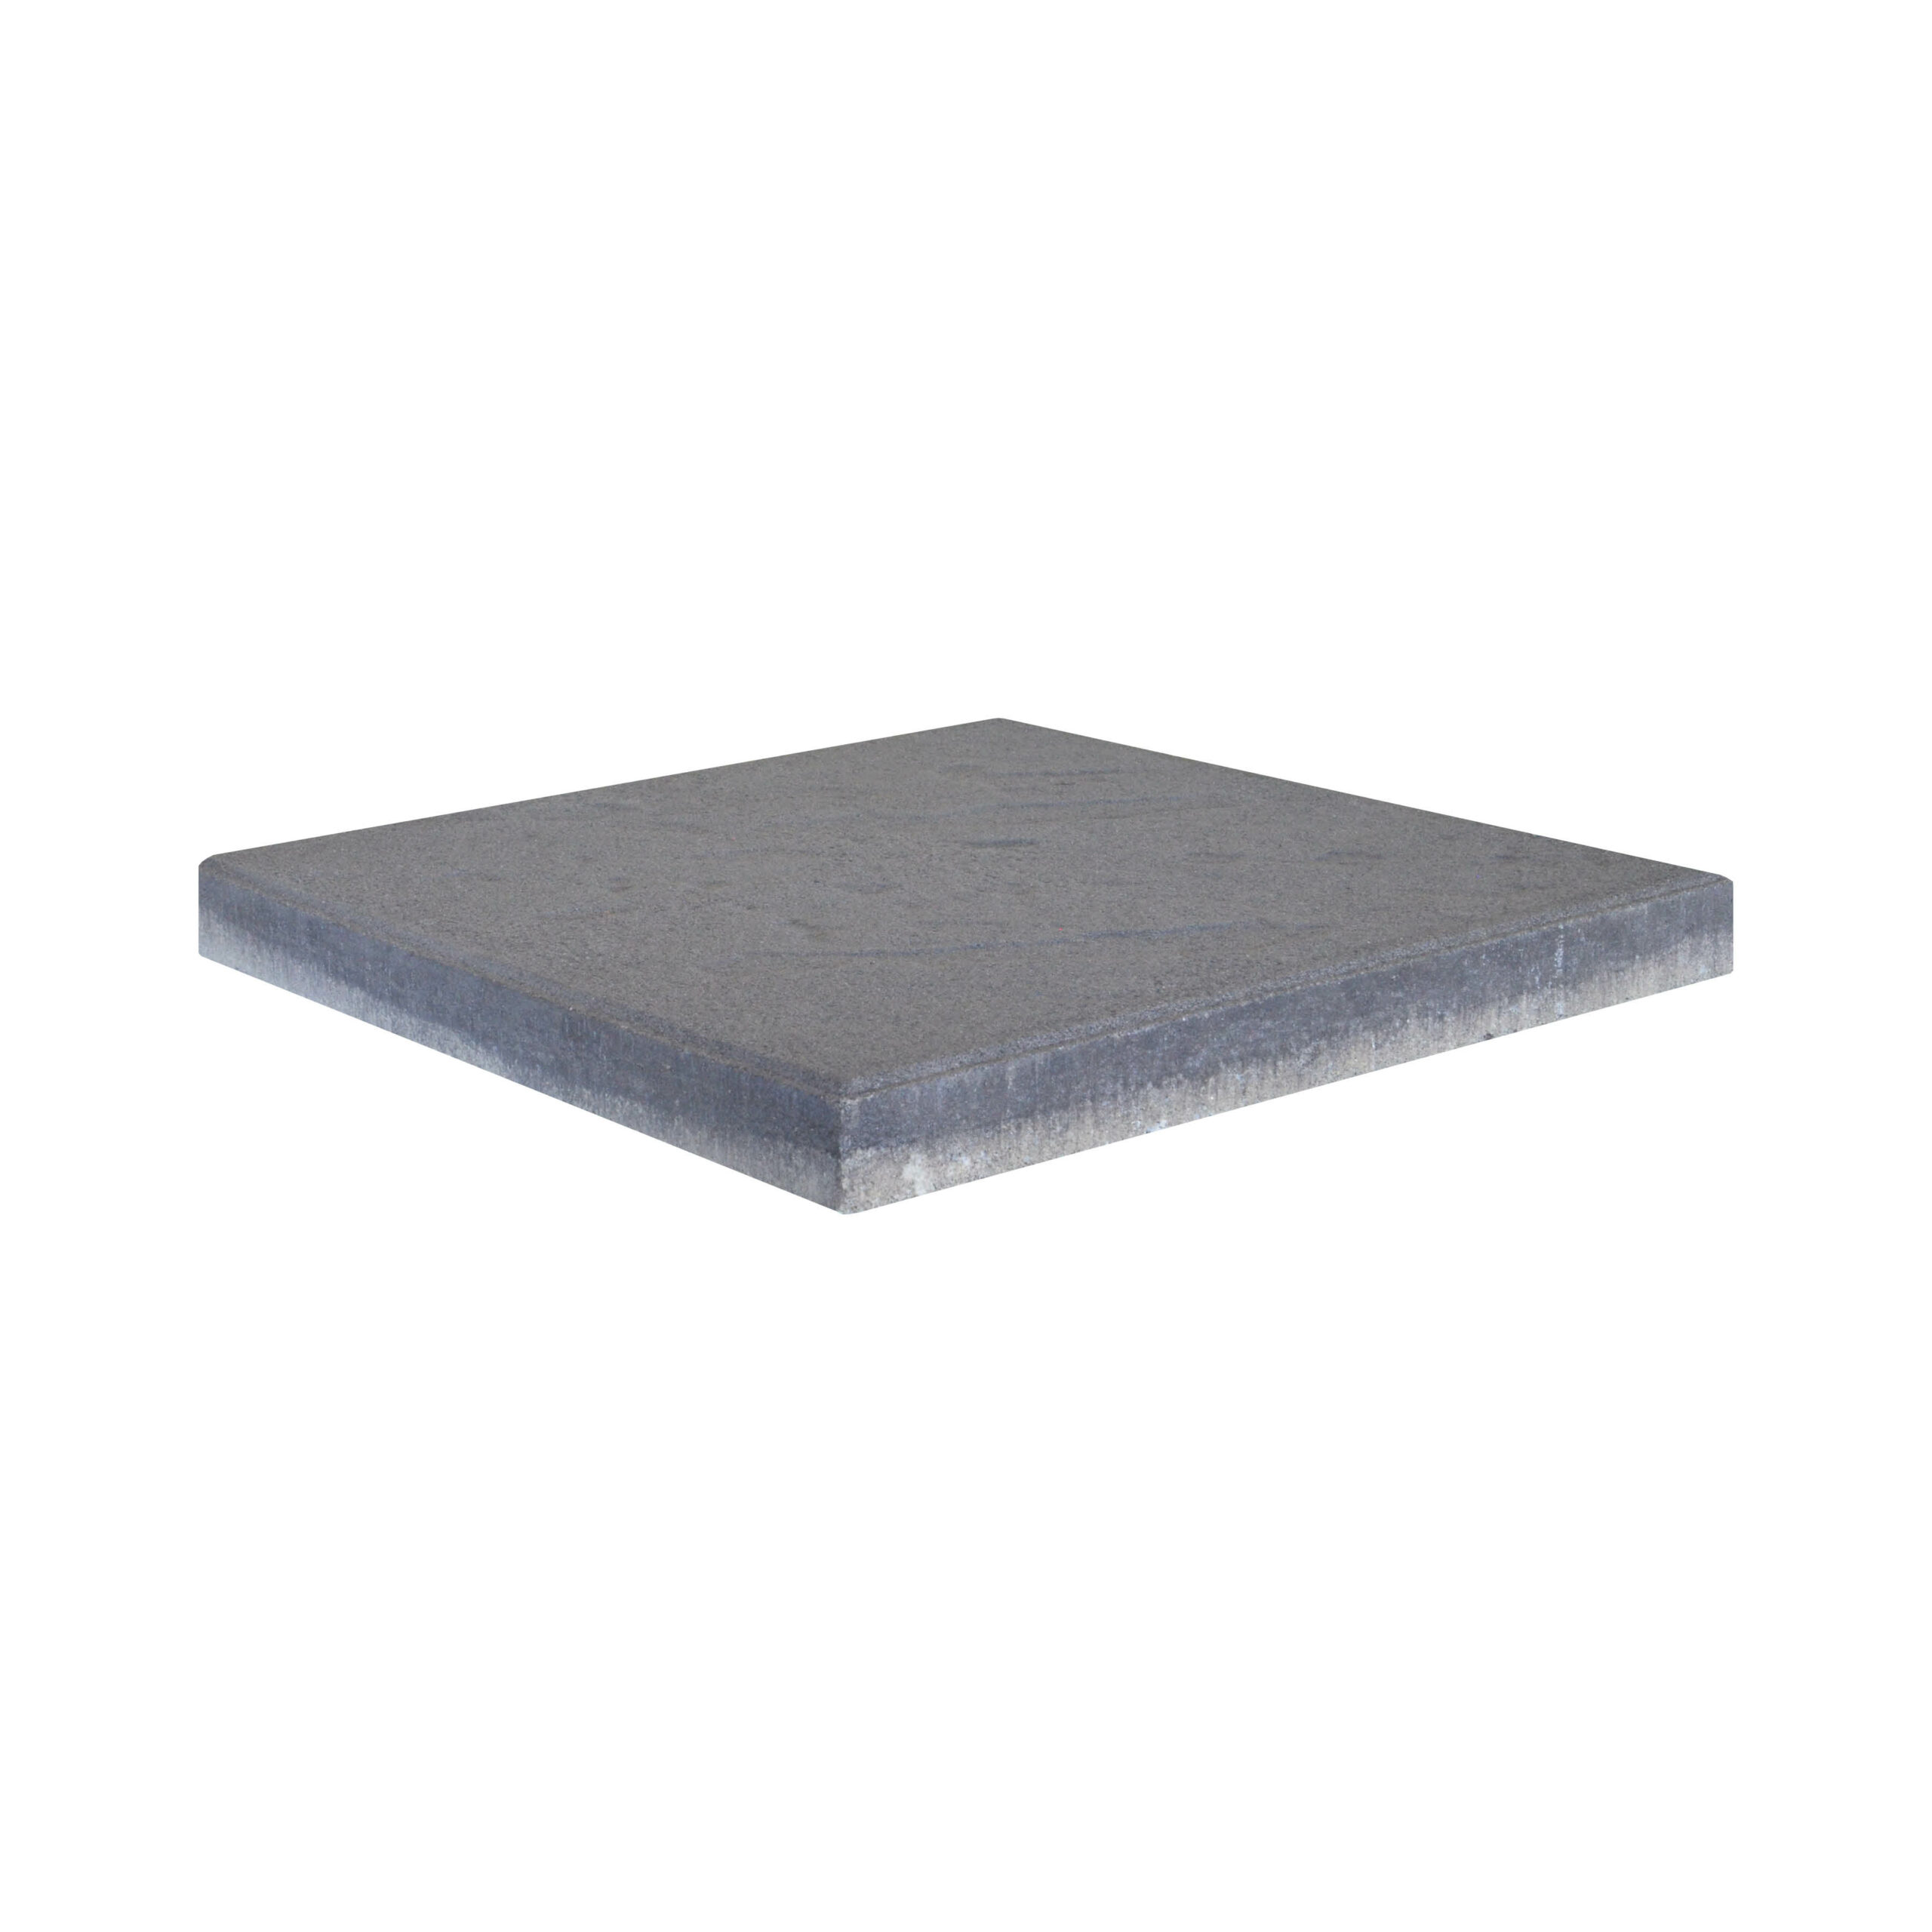 Slate Stone | 400 x 400 Paver | Charcoal